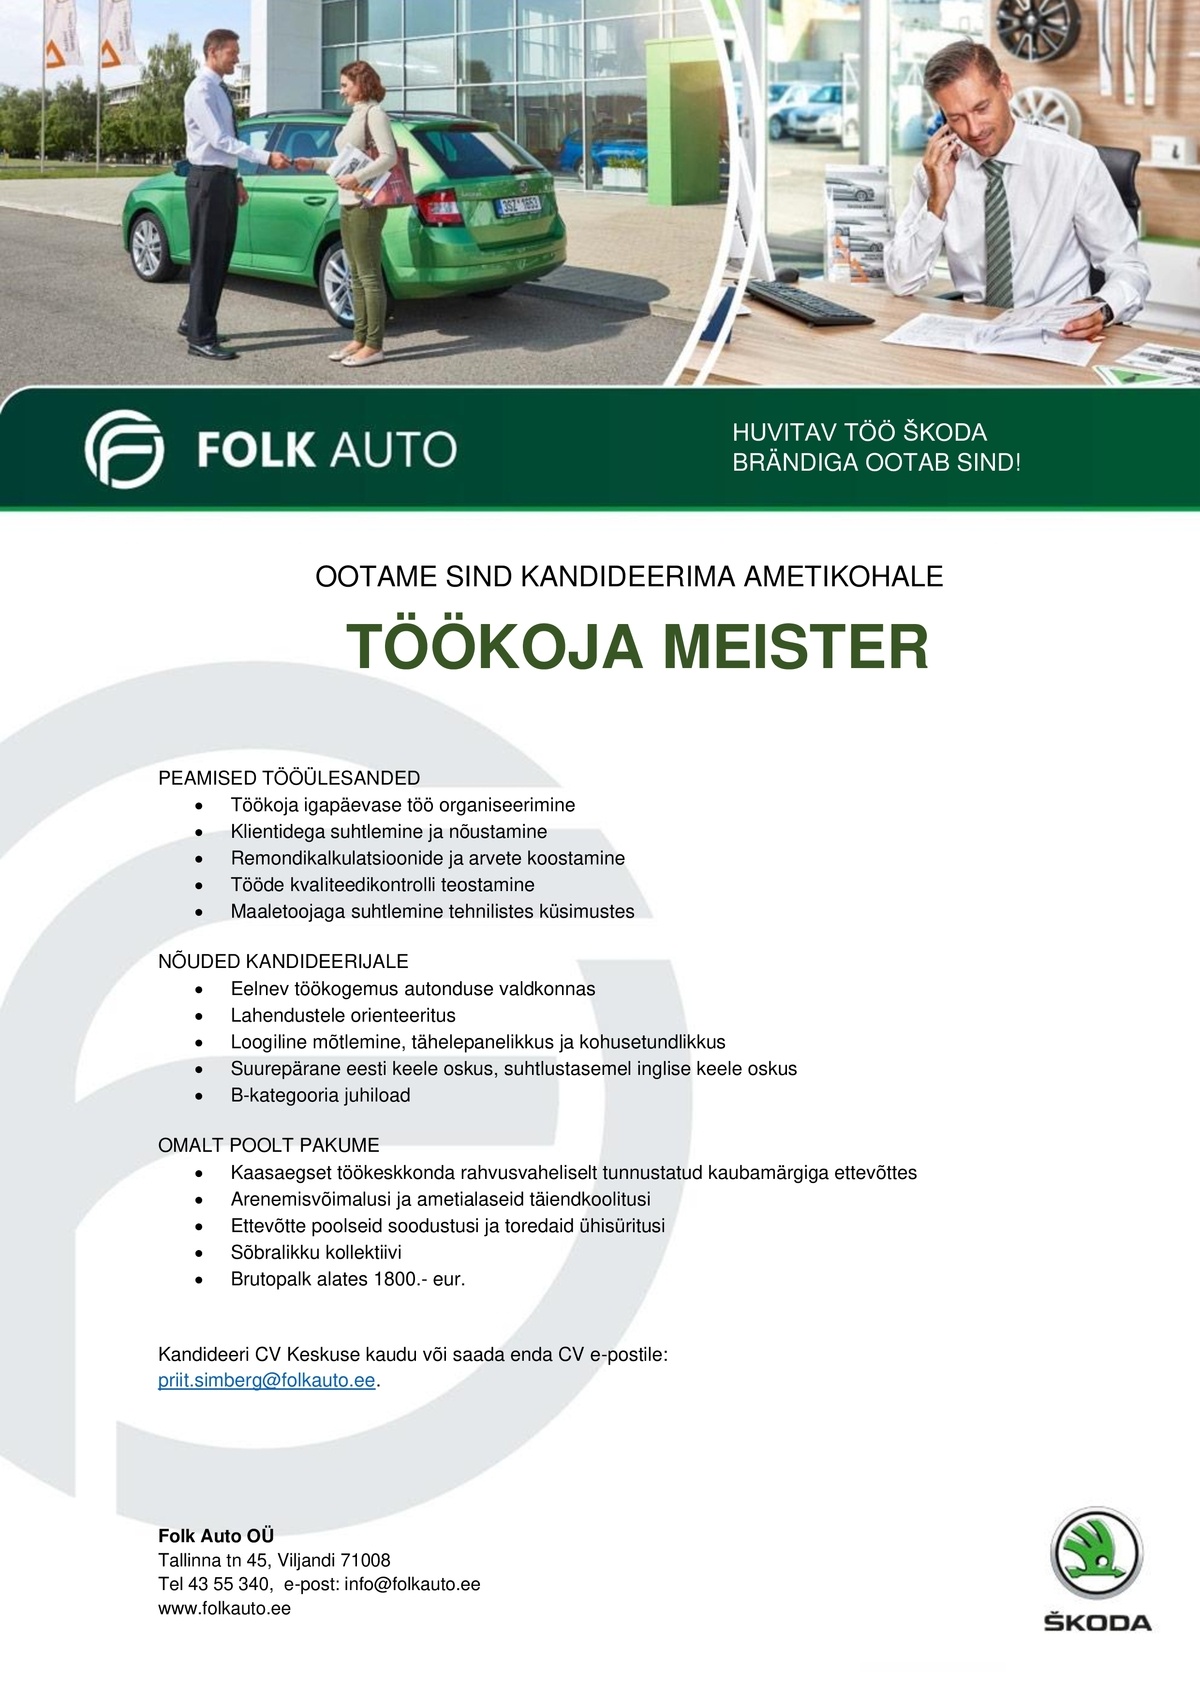 Folk Auto OÜ Töökoja meister